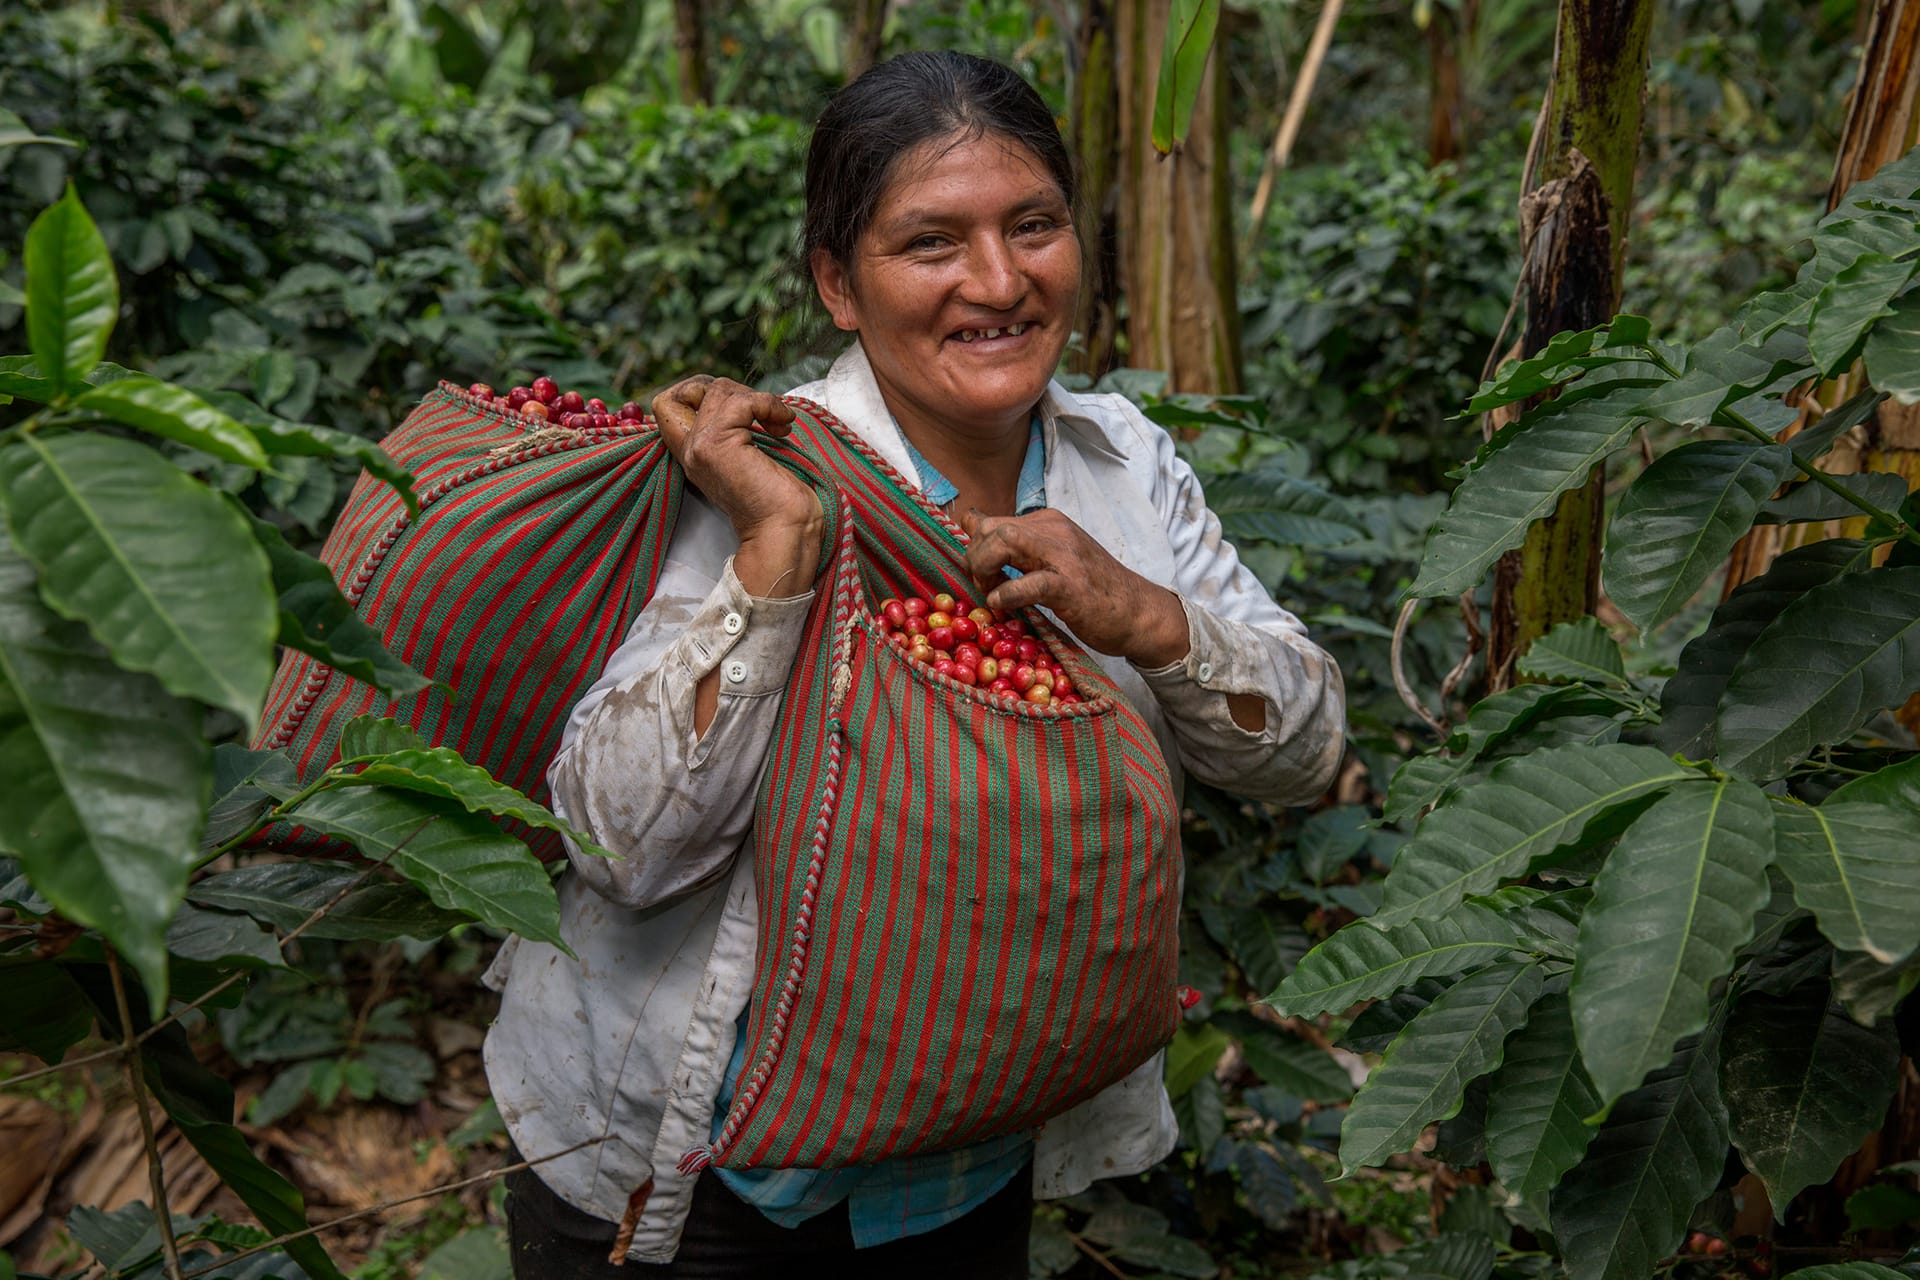 Équitable Fairtrade café coffee